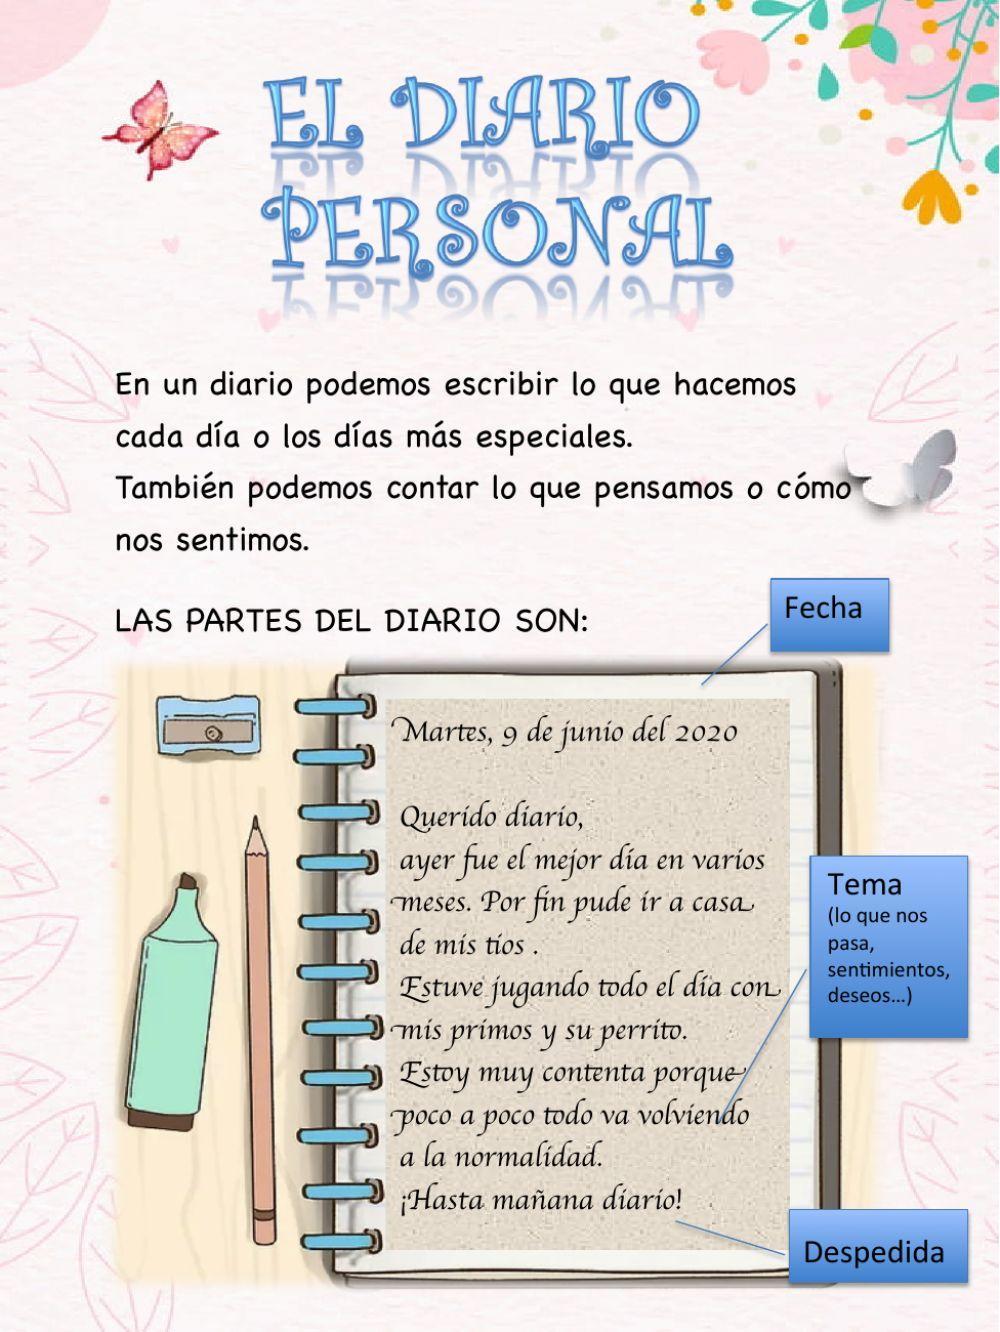 Diario personal worksheet